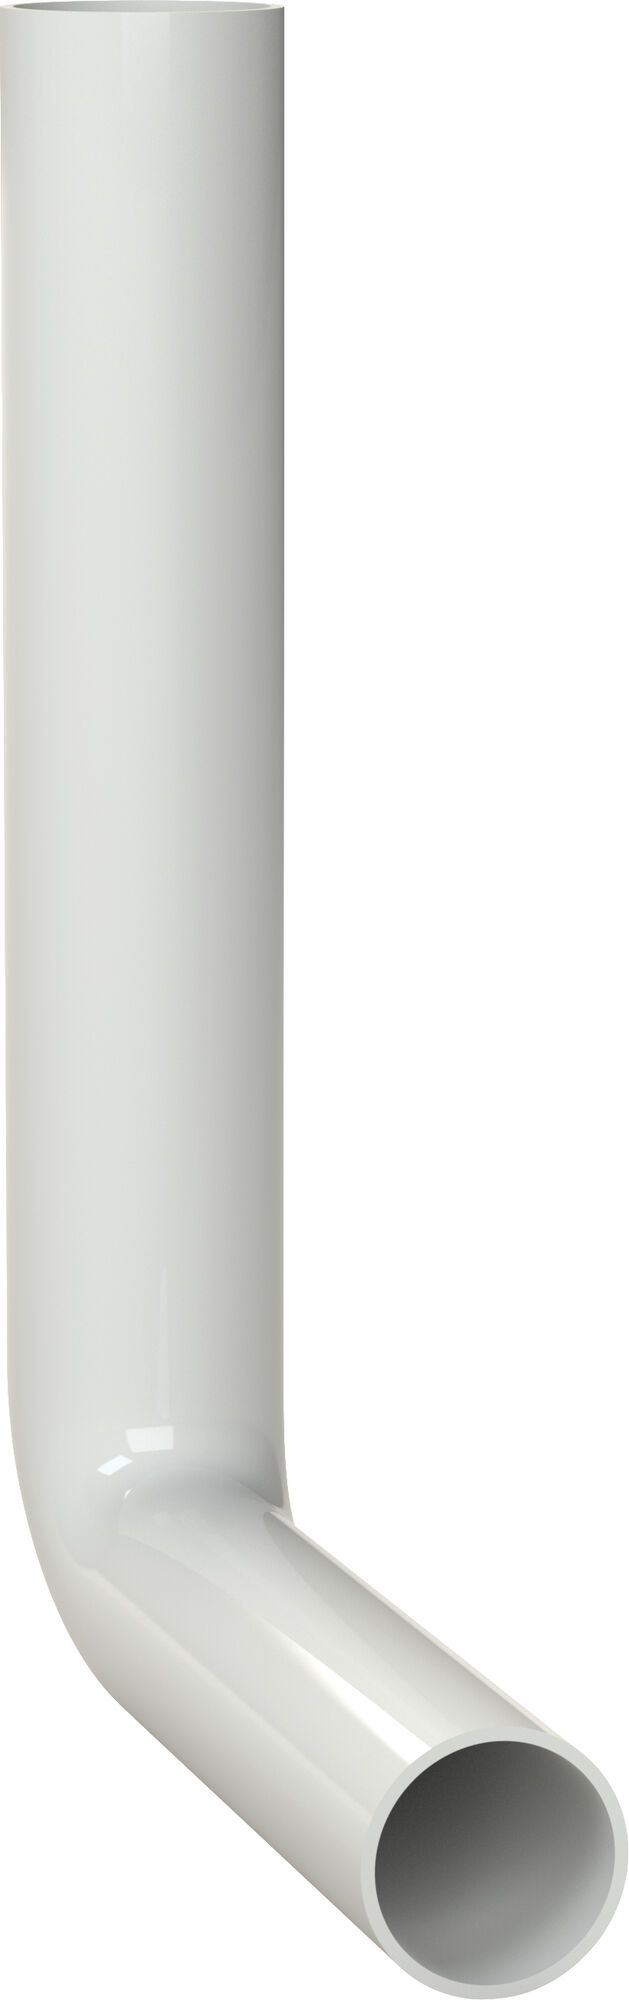 Spülrohrbogen 280x210 mm, weiß